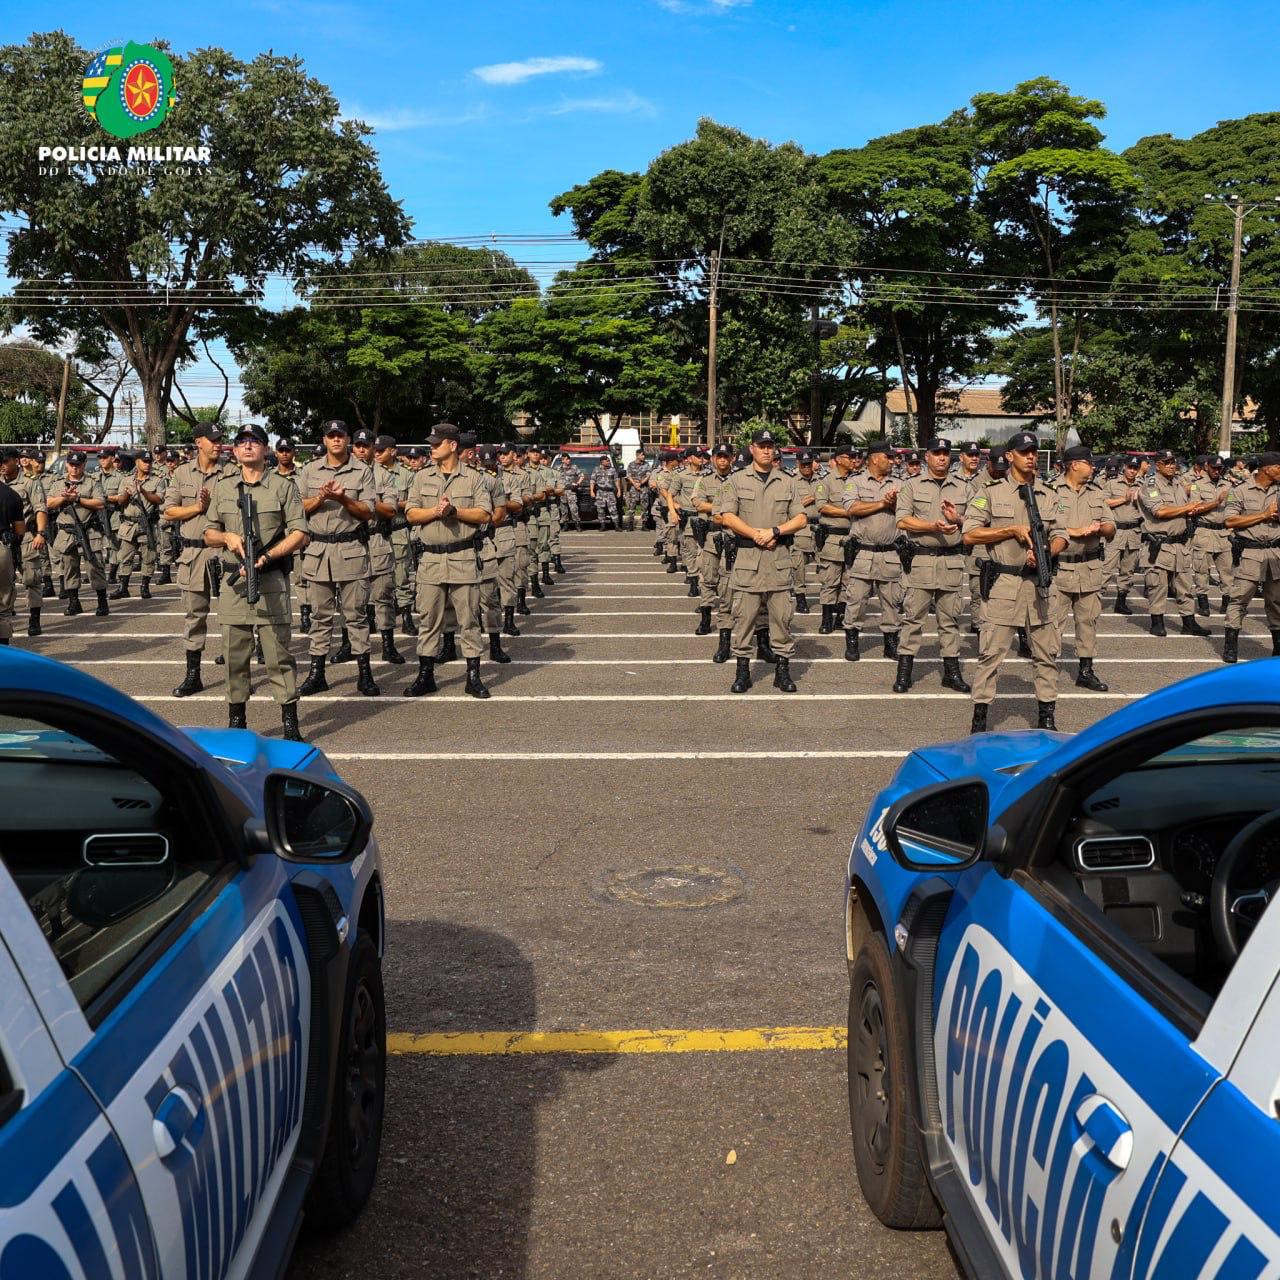 Policiais militares goianos trabalham de forma integrada às demais forças estaduais de segurança e às forças federais e municipais para reduzir índices de violência